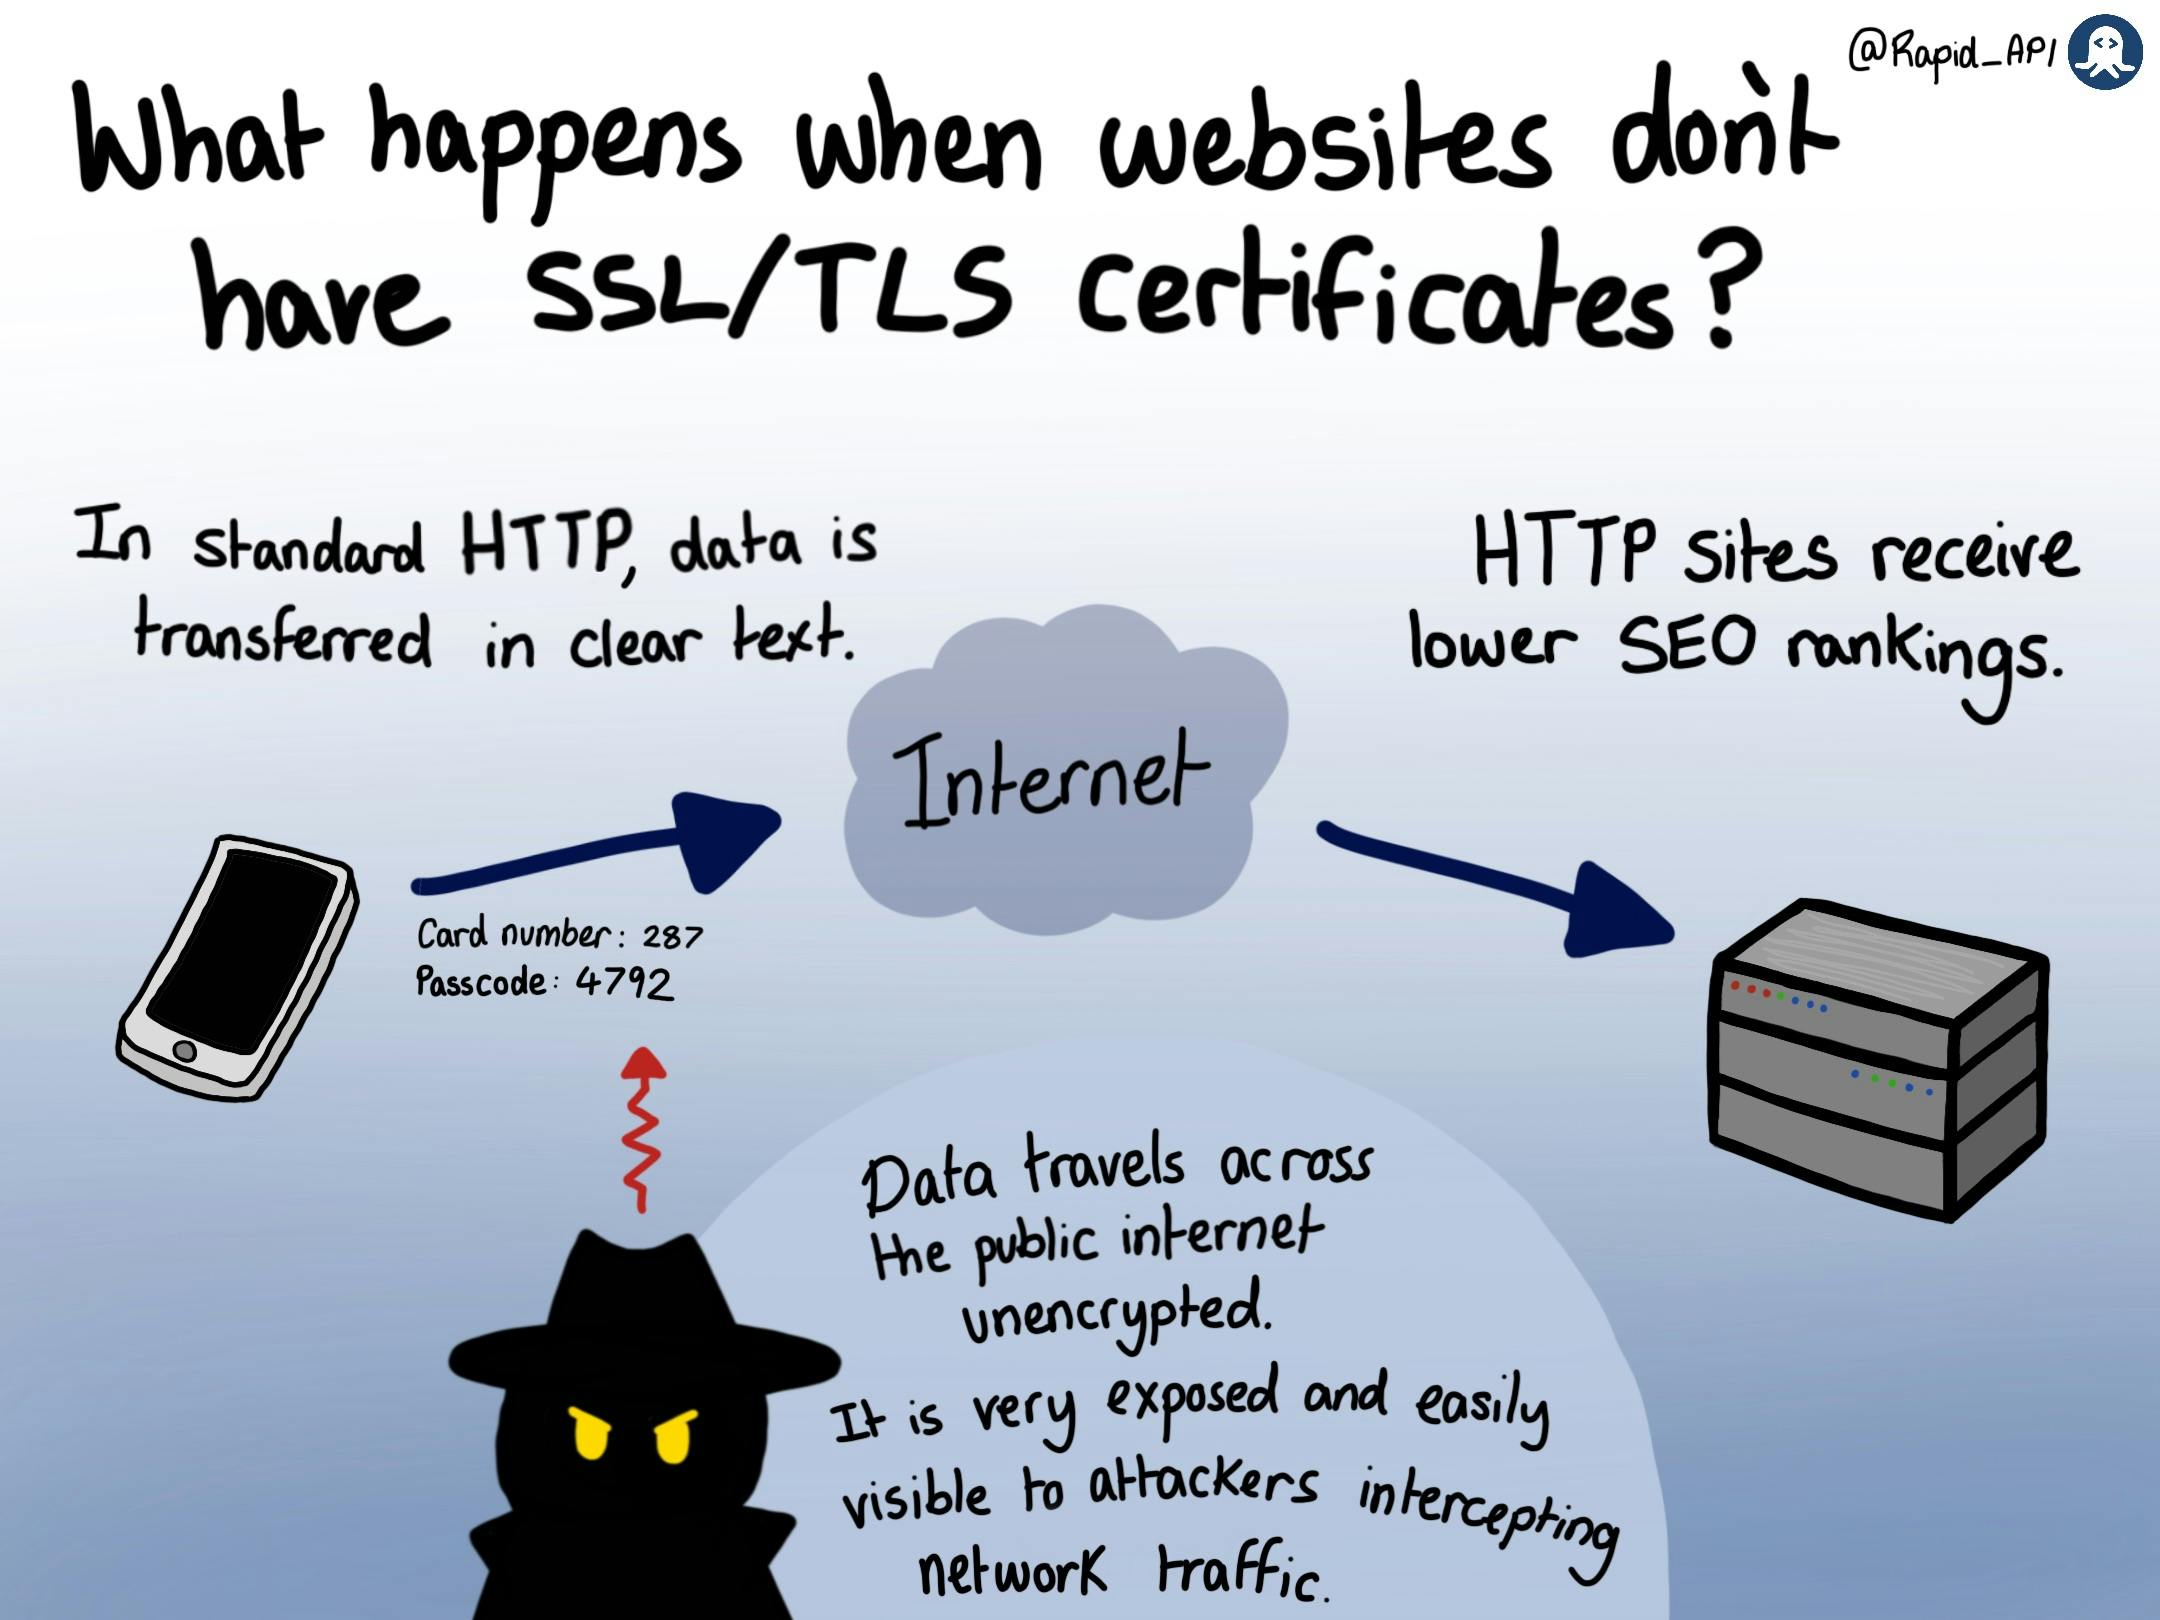 What is SSL/TLS?